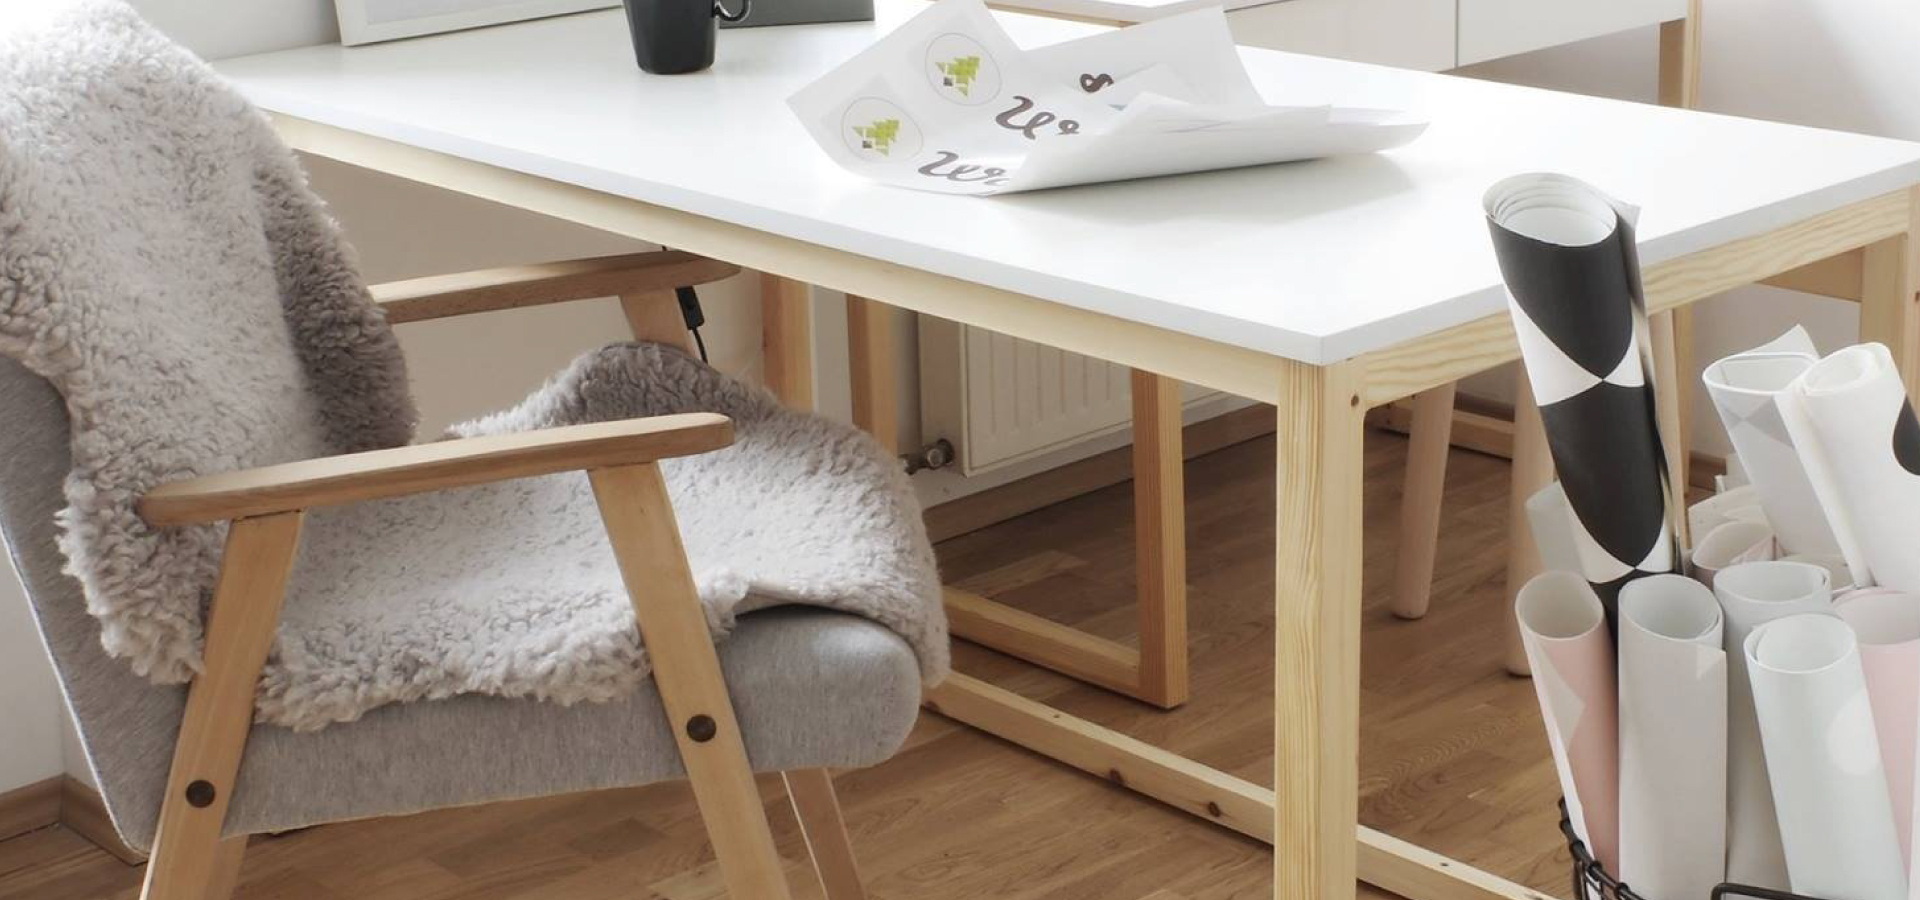 Drewniane łóżko z białym blatem i krzesłem z szarą tapicerką w stylu retro. Na fotelu położony dywanik z owczej skóry.